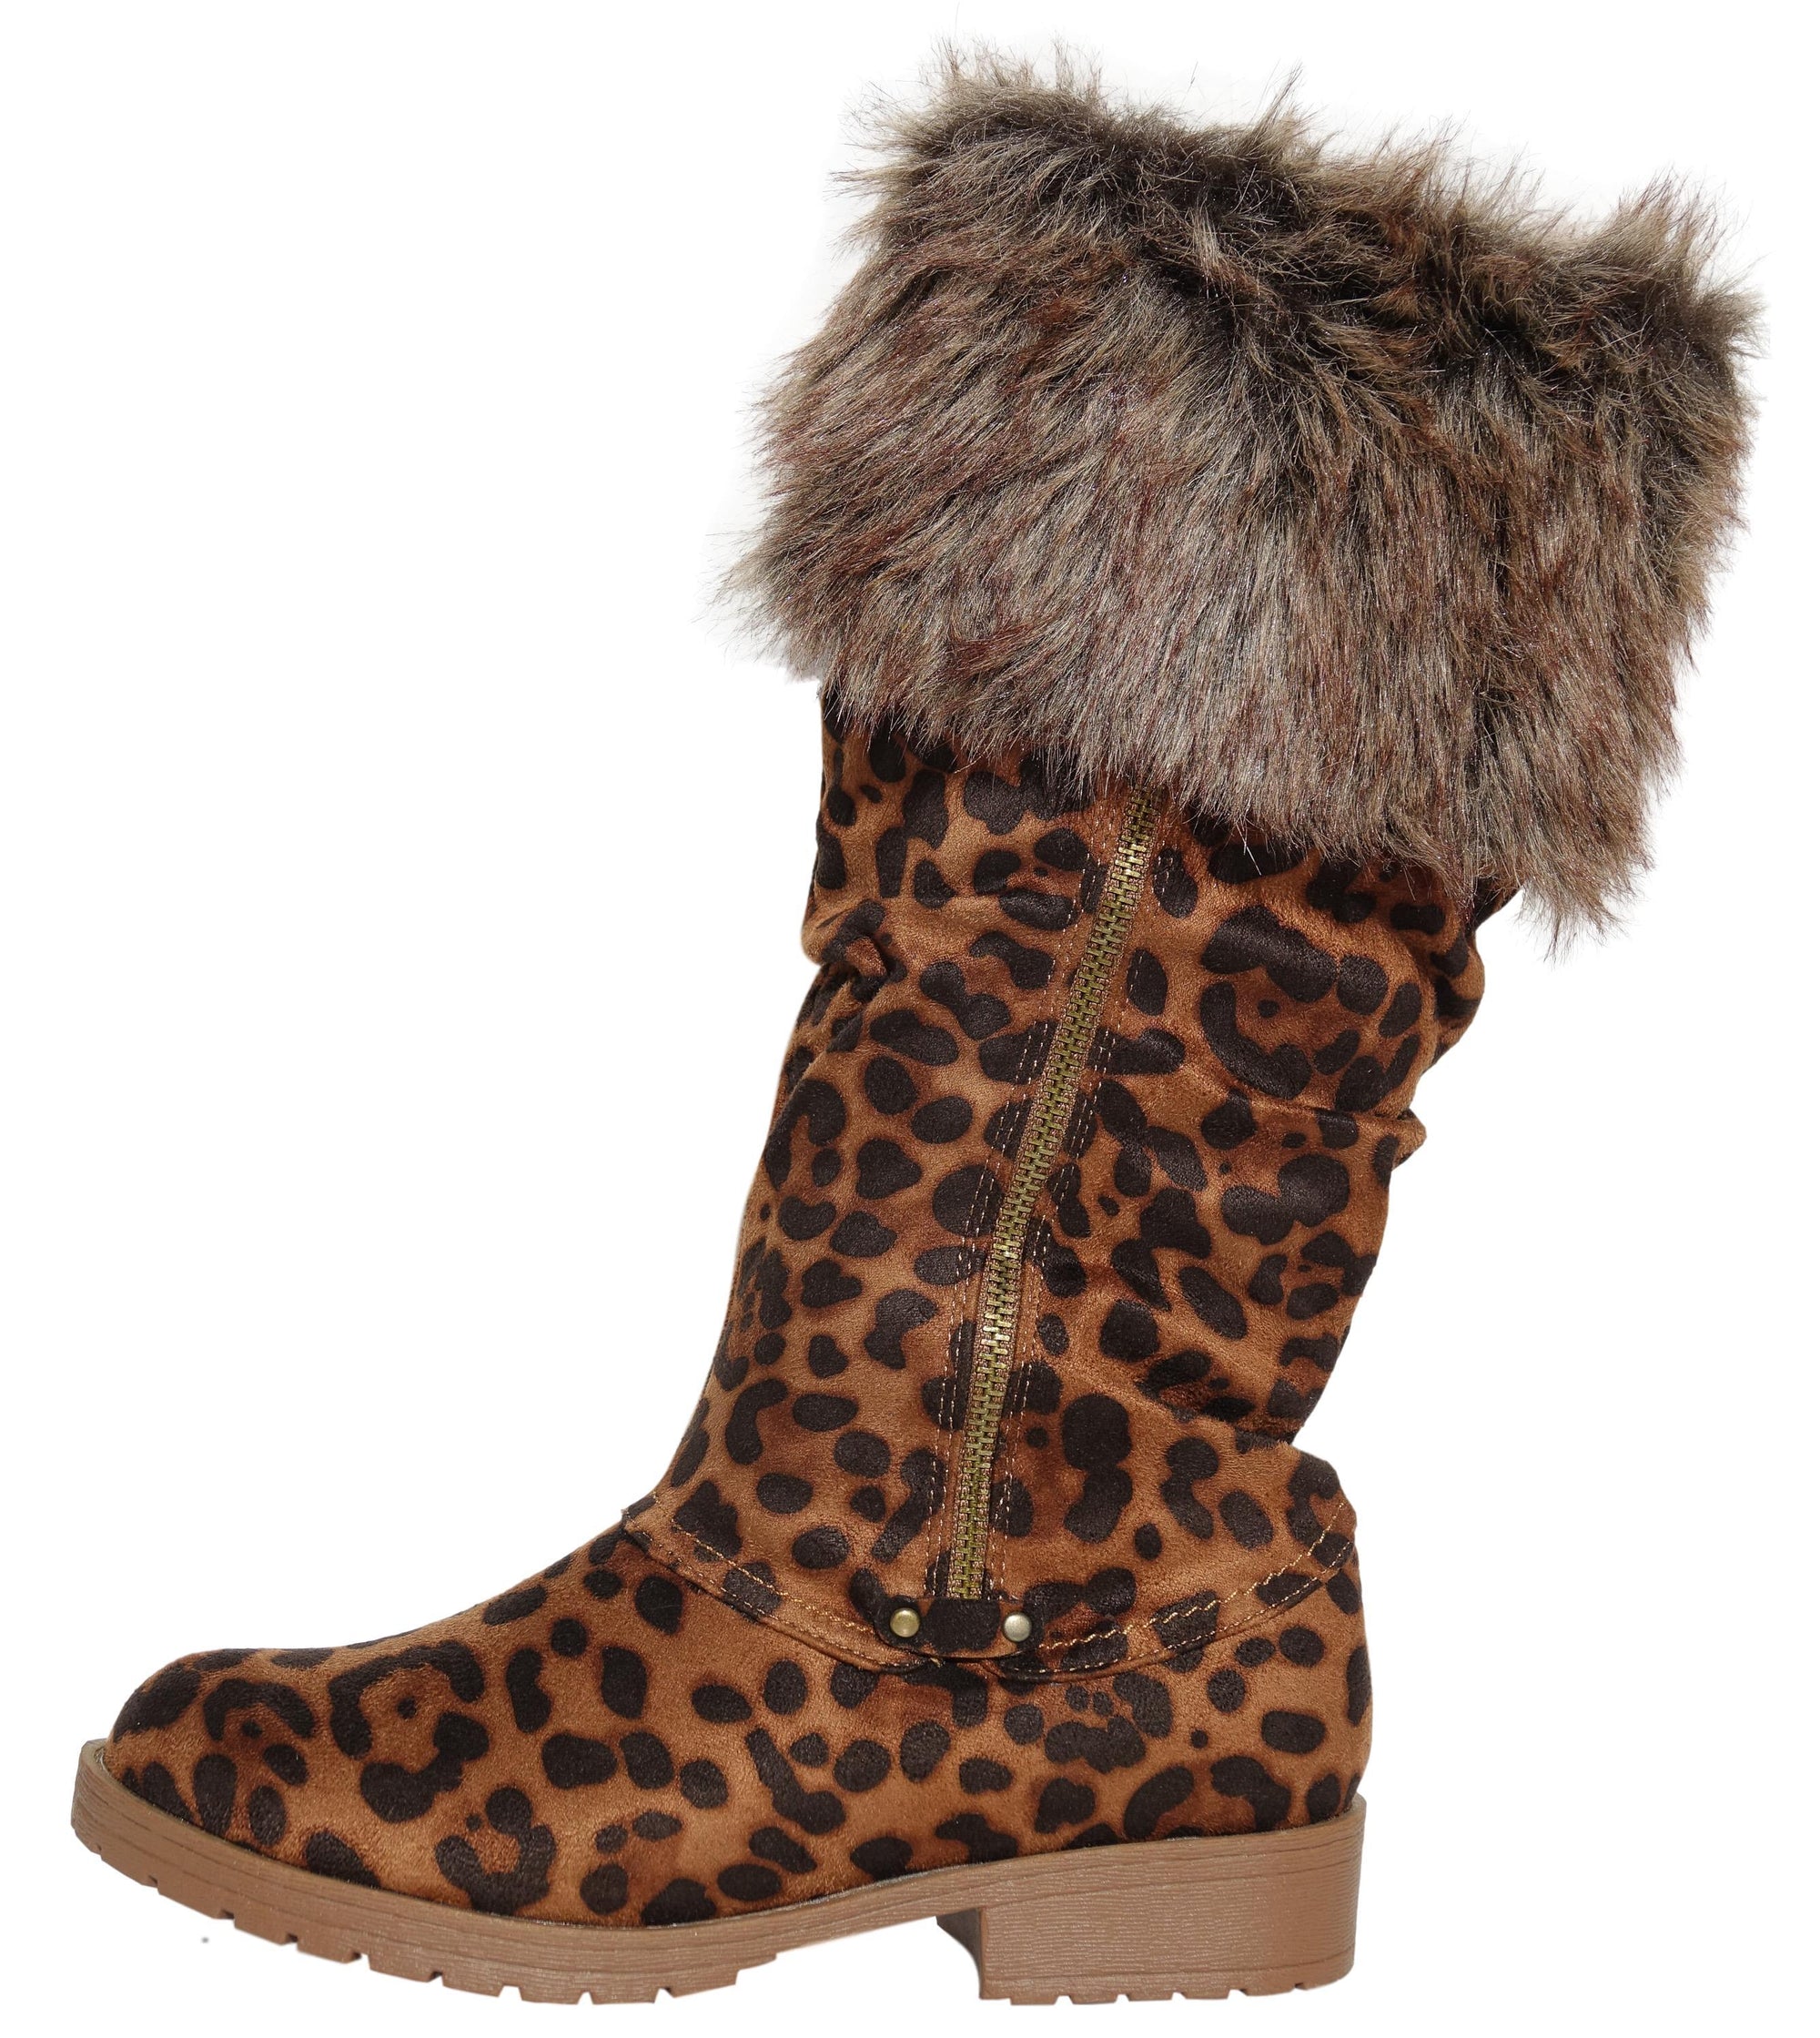 wholesale fur boots